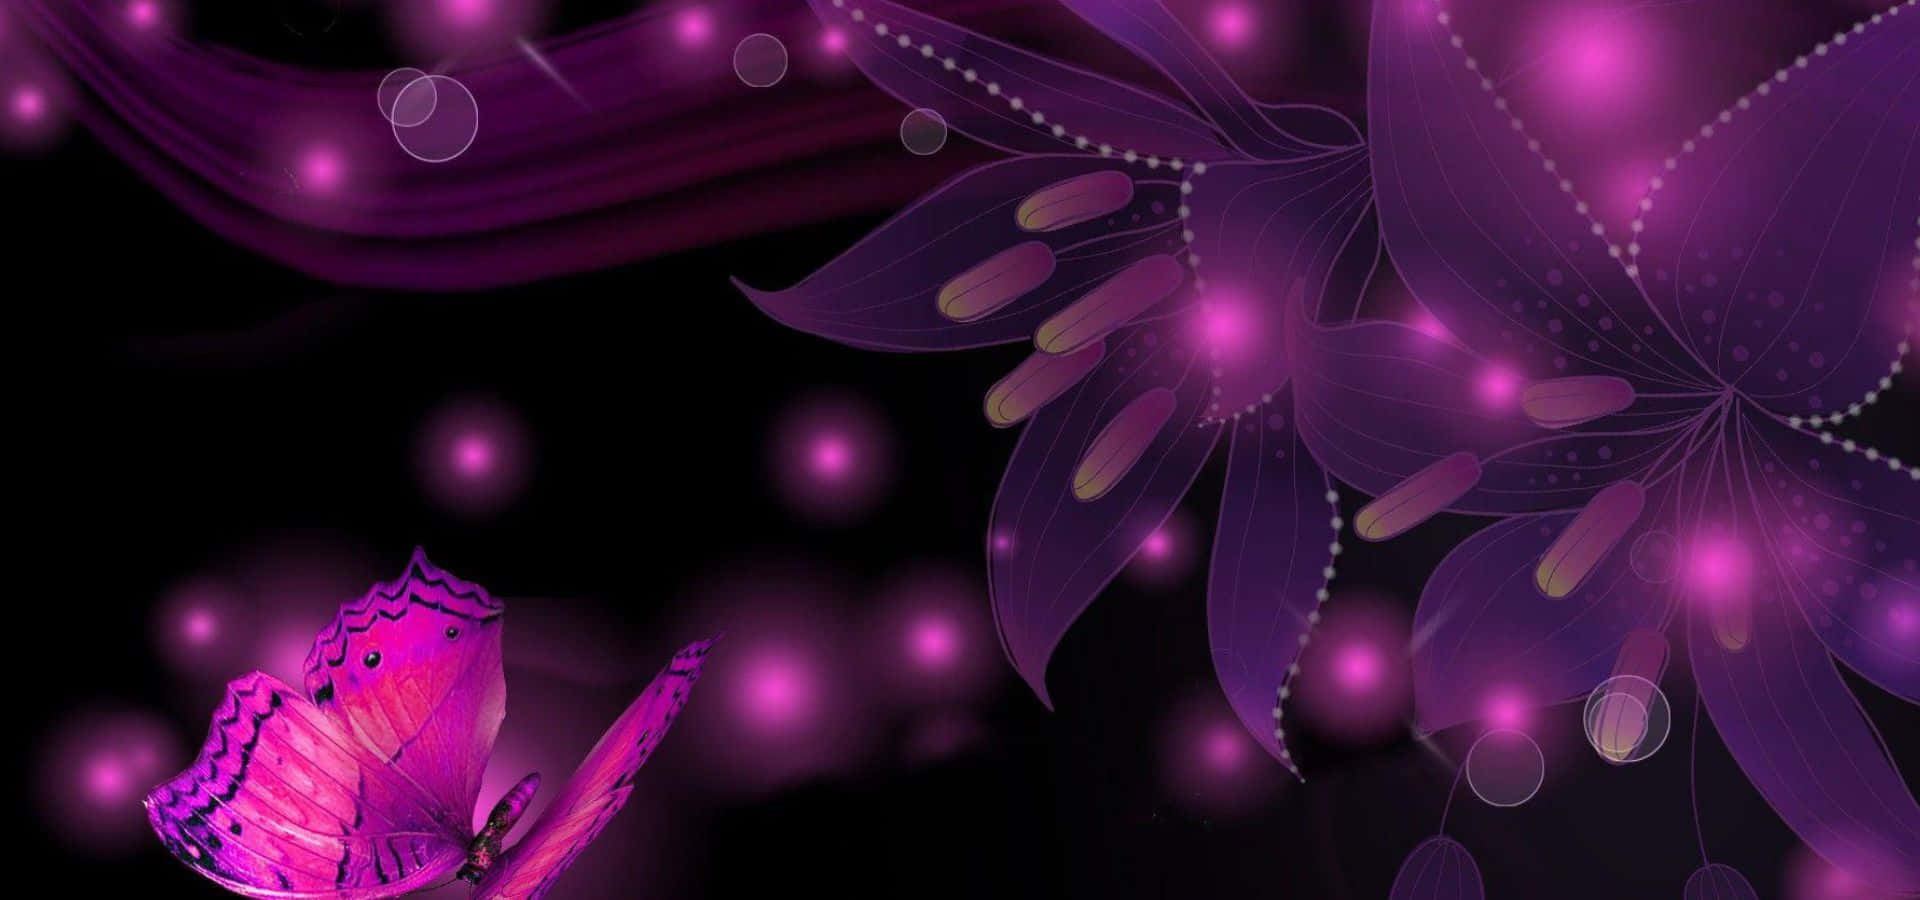 Purple Butterfly Wallpapers Hd